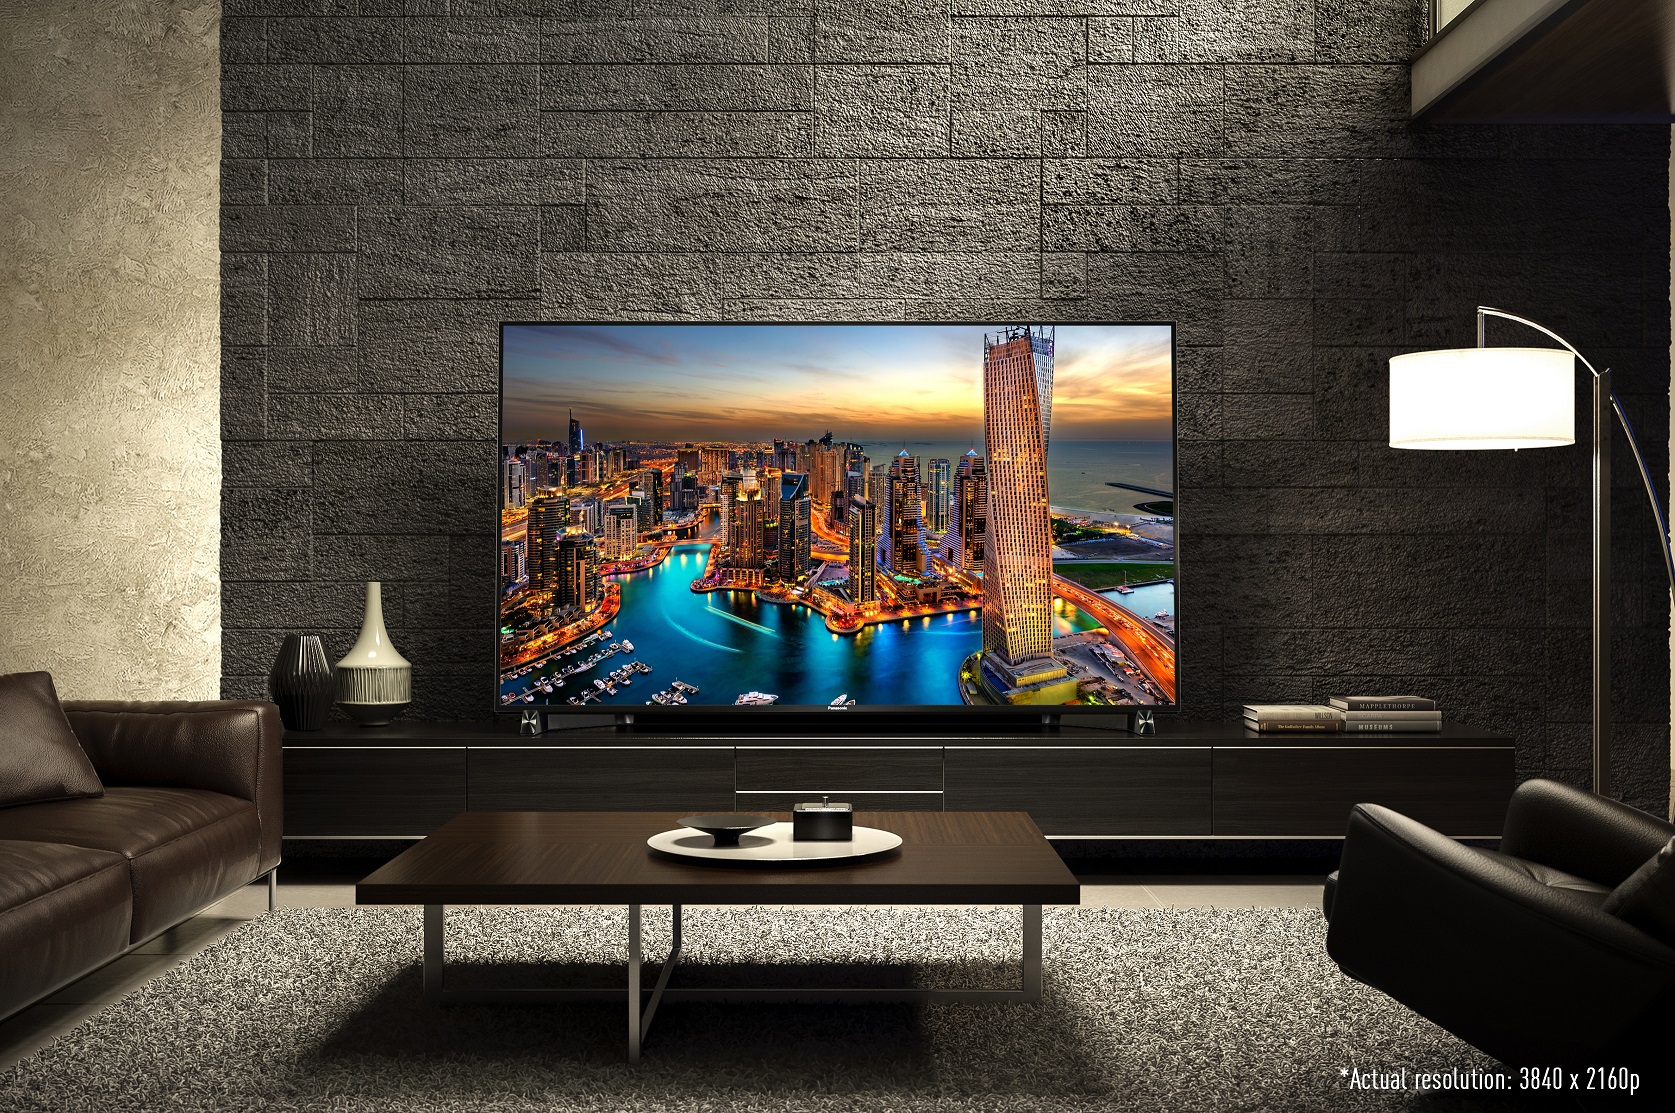 DX900: el primer televisor Ultra HD Premium oficial del mundo